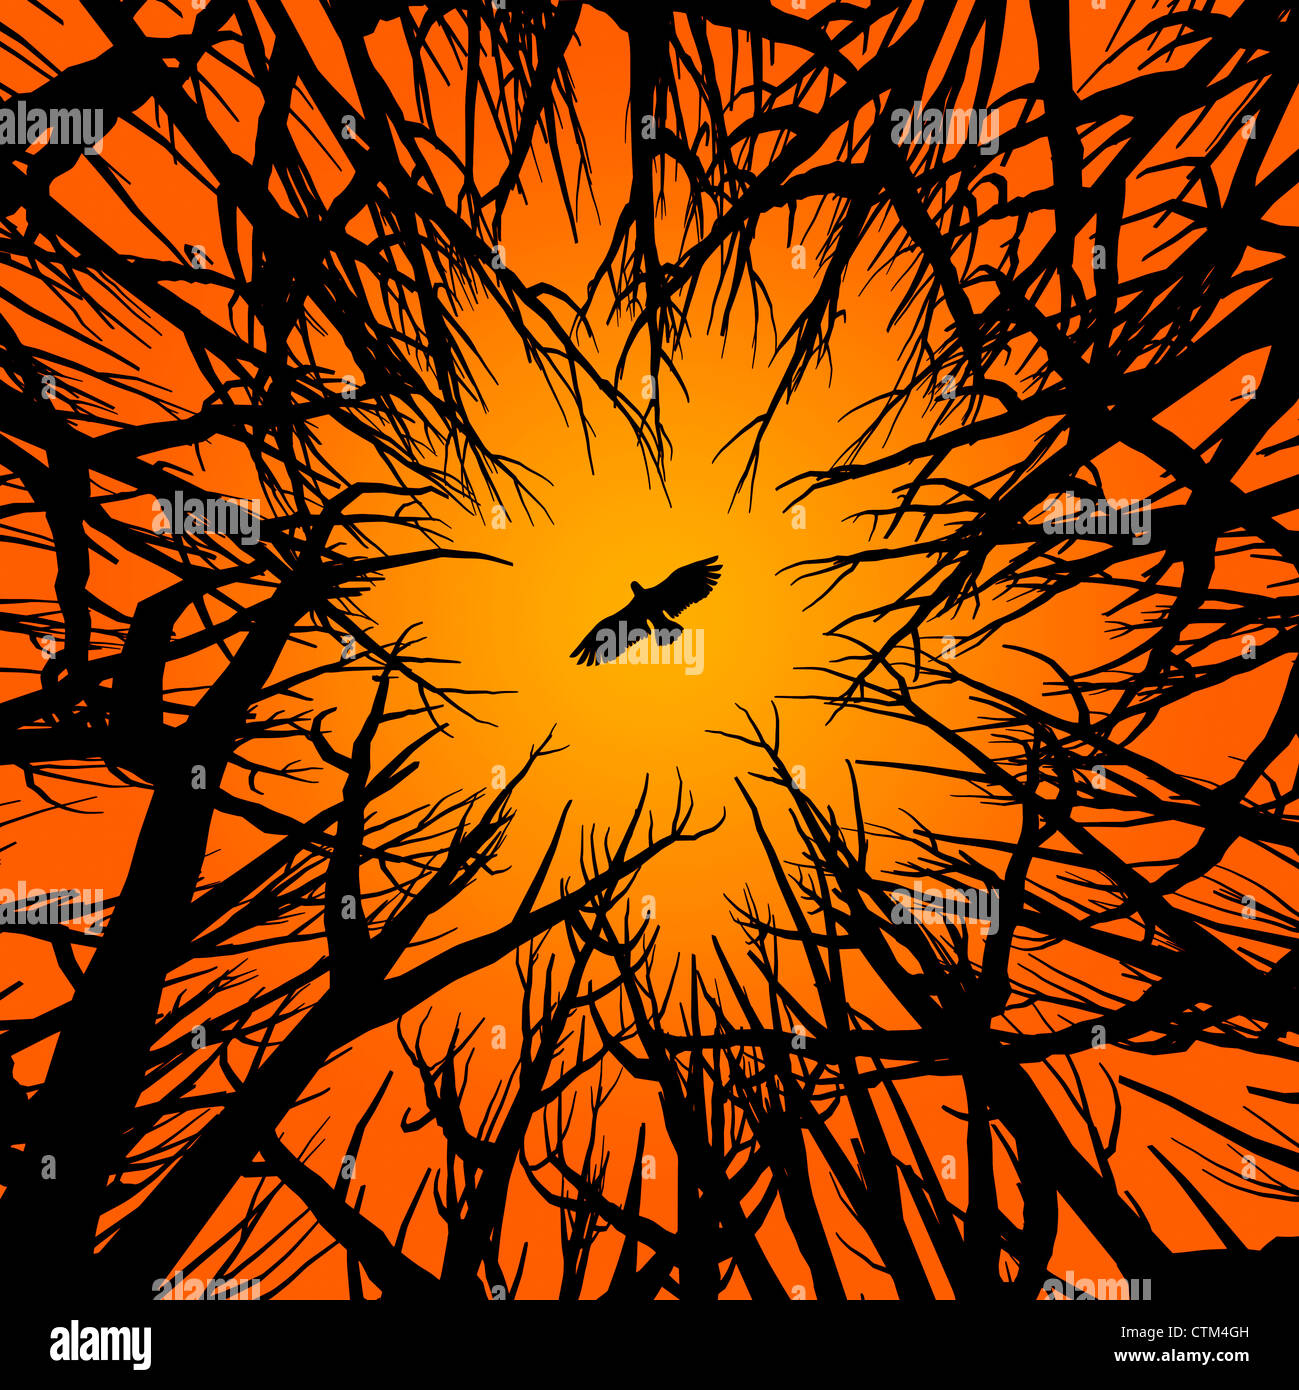 Illustration (vecteur) de style silhouette d'arbres et d'un oiseau de proie volant sous ciel orange Banque D'Images